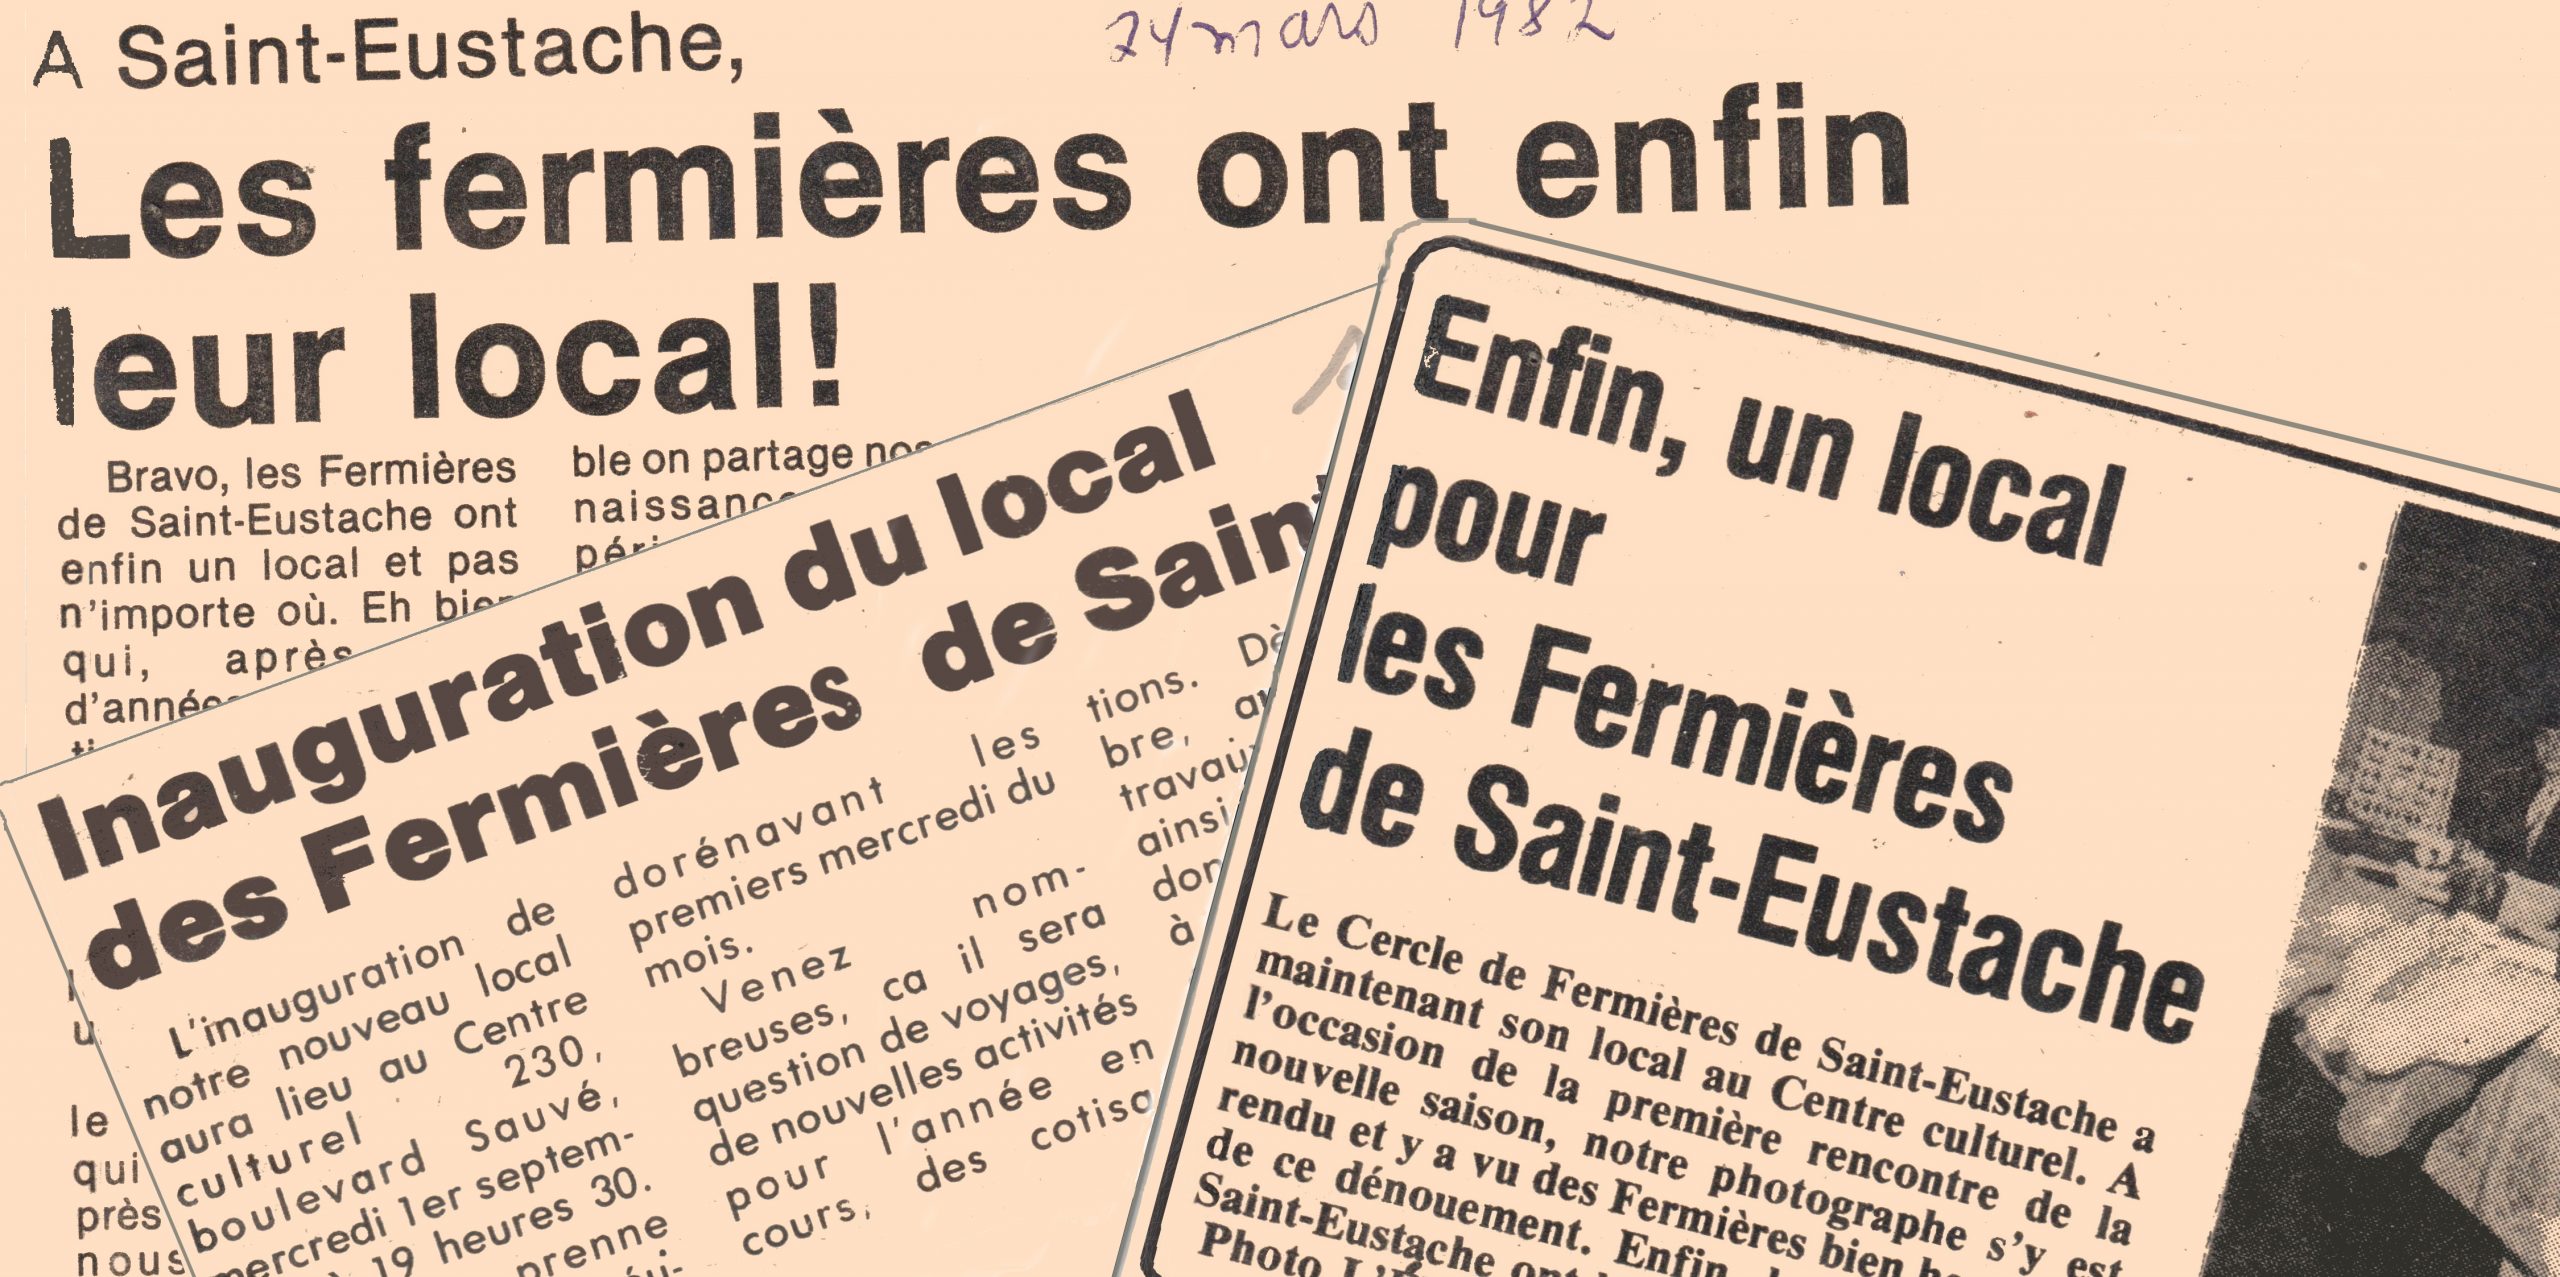 Trois coupures de journaux jointes ensemble. Les titres des trois articles sont les suivants : "Les Fermières ont enfin leur local! ", "Inauguration du local des Fermières de Saint-[Eustache]" et "Enfin, un local pour les Fermières de Saint-Eustache.